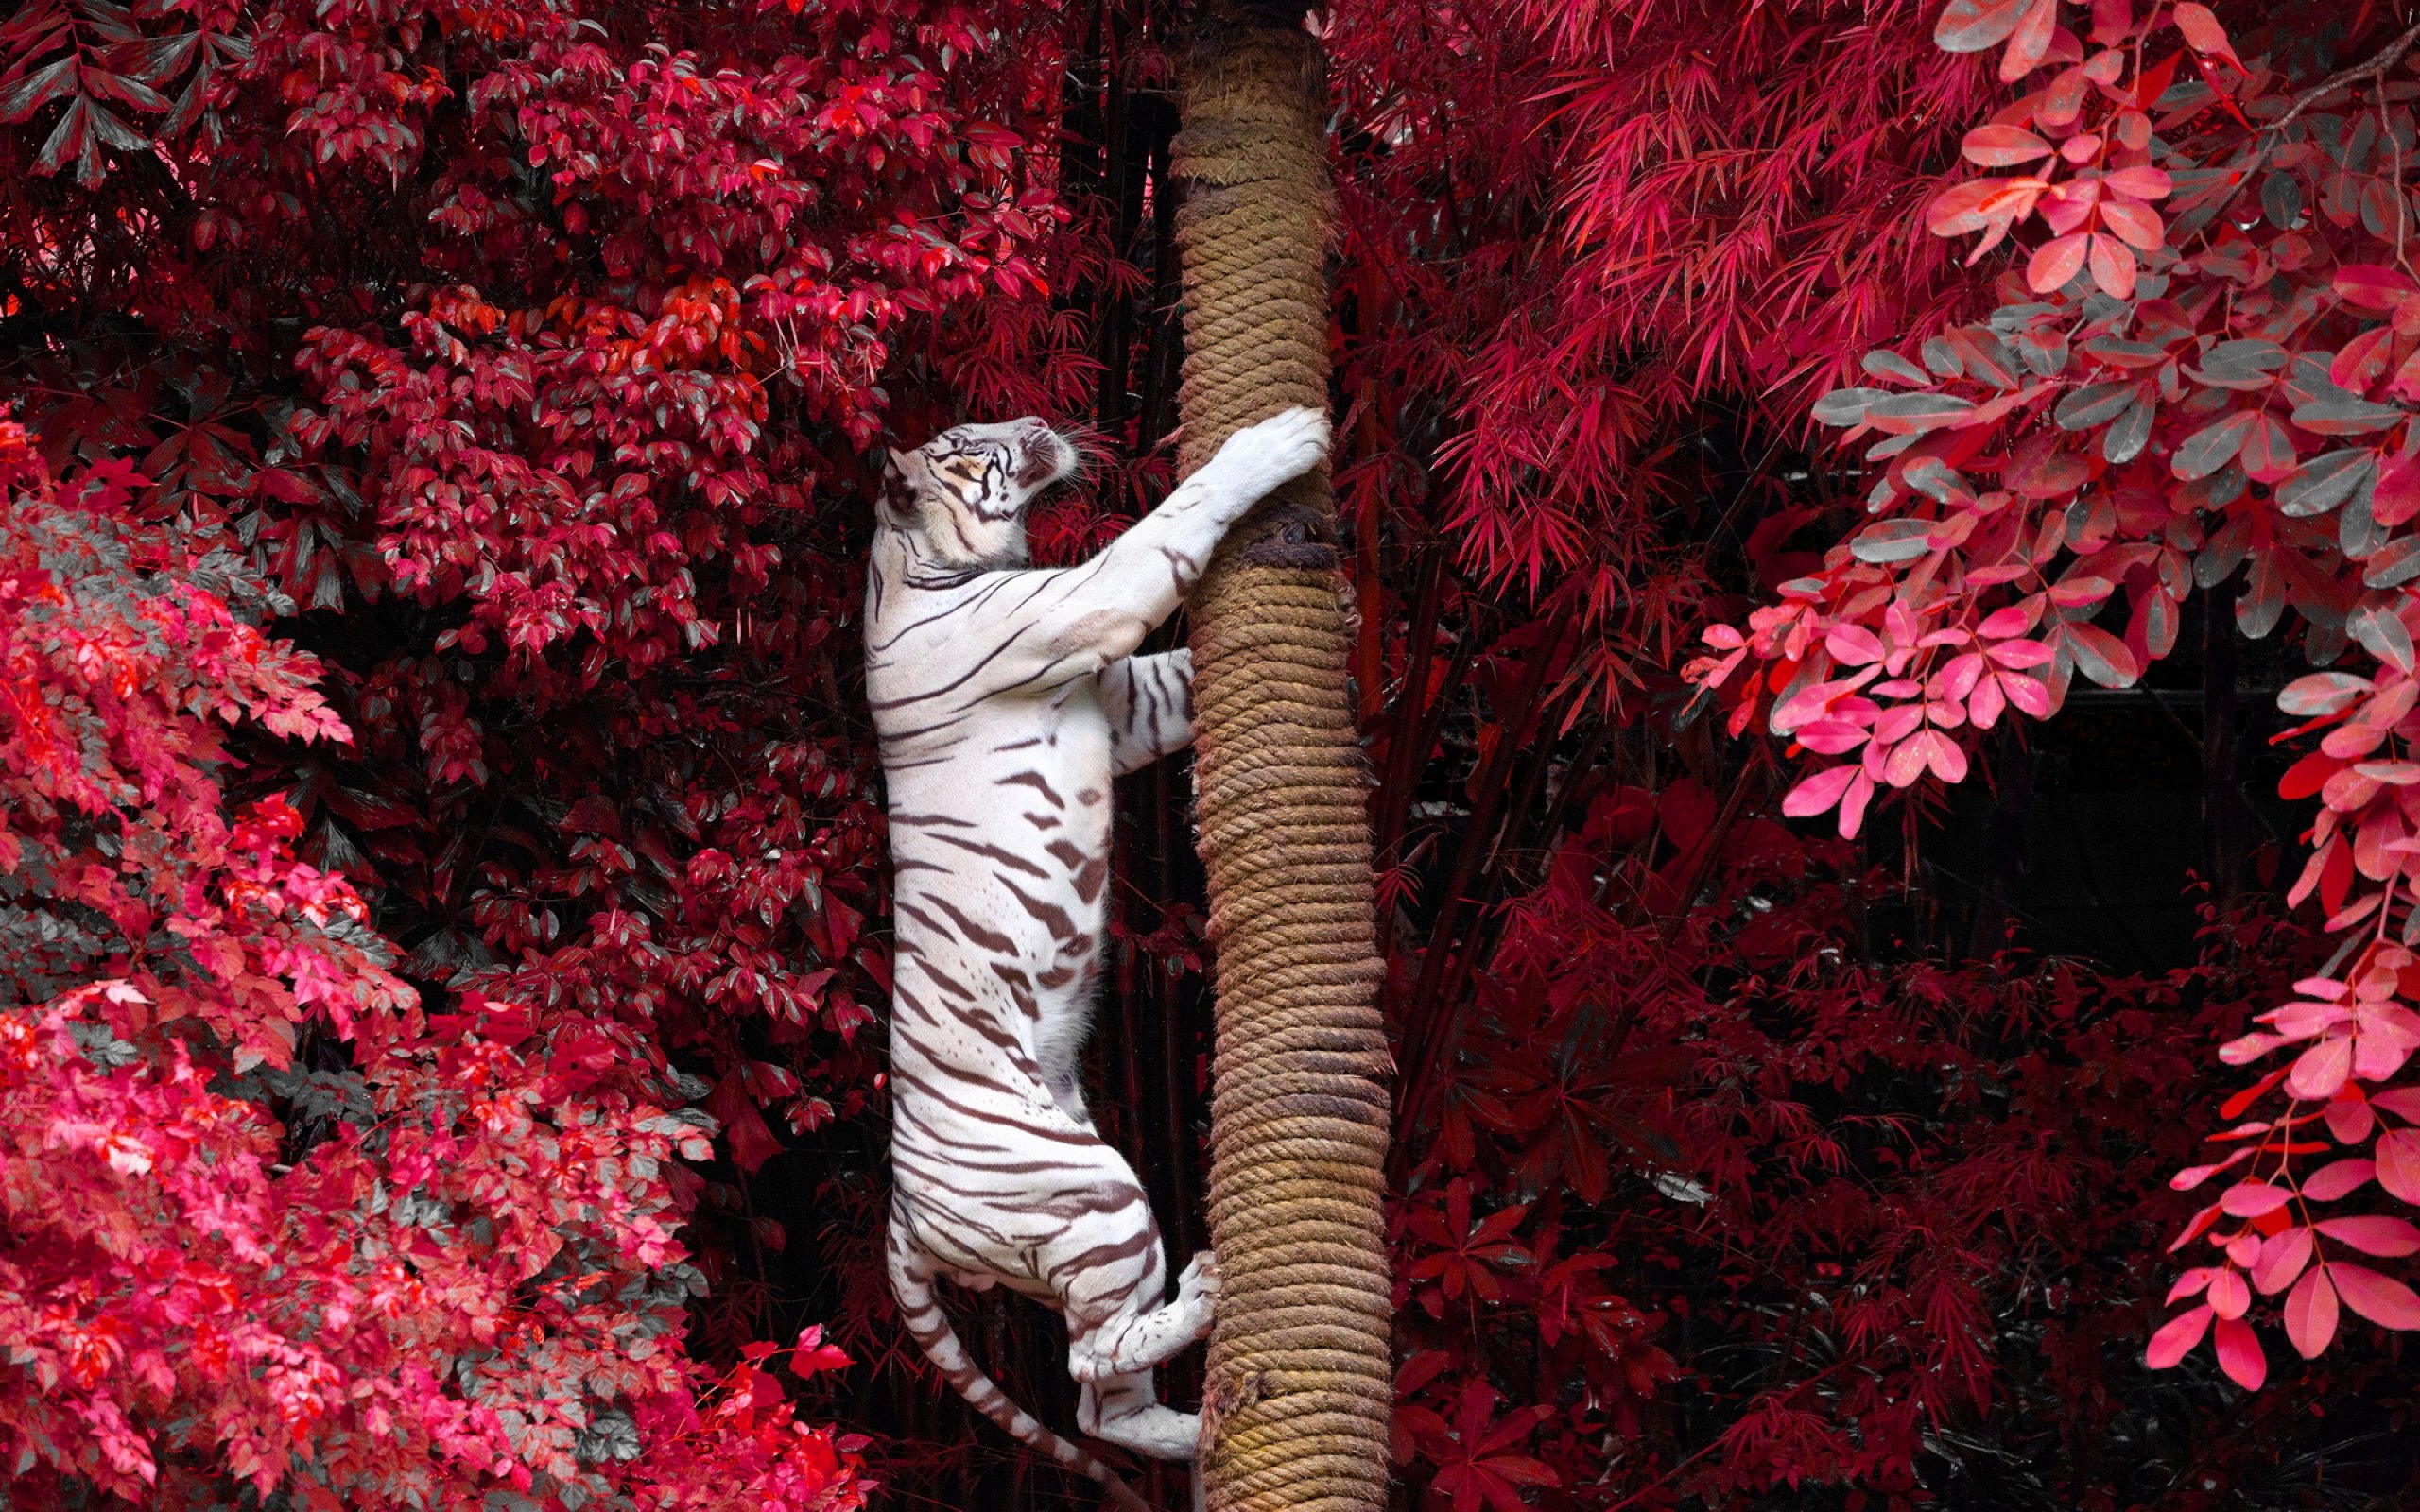 tiger, Cat Wallpaper